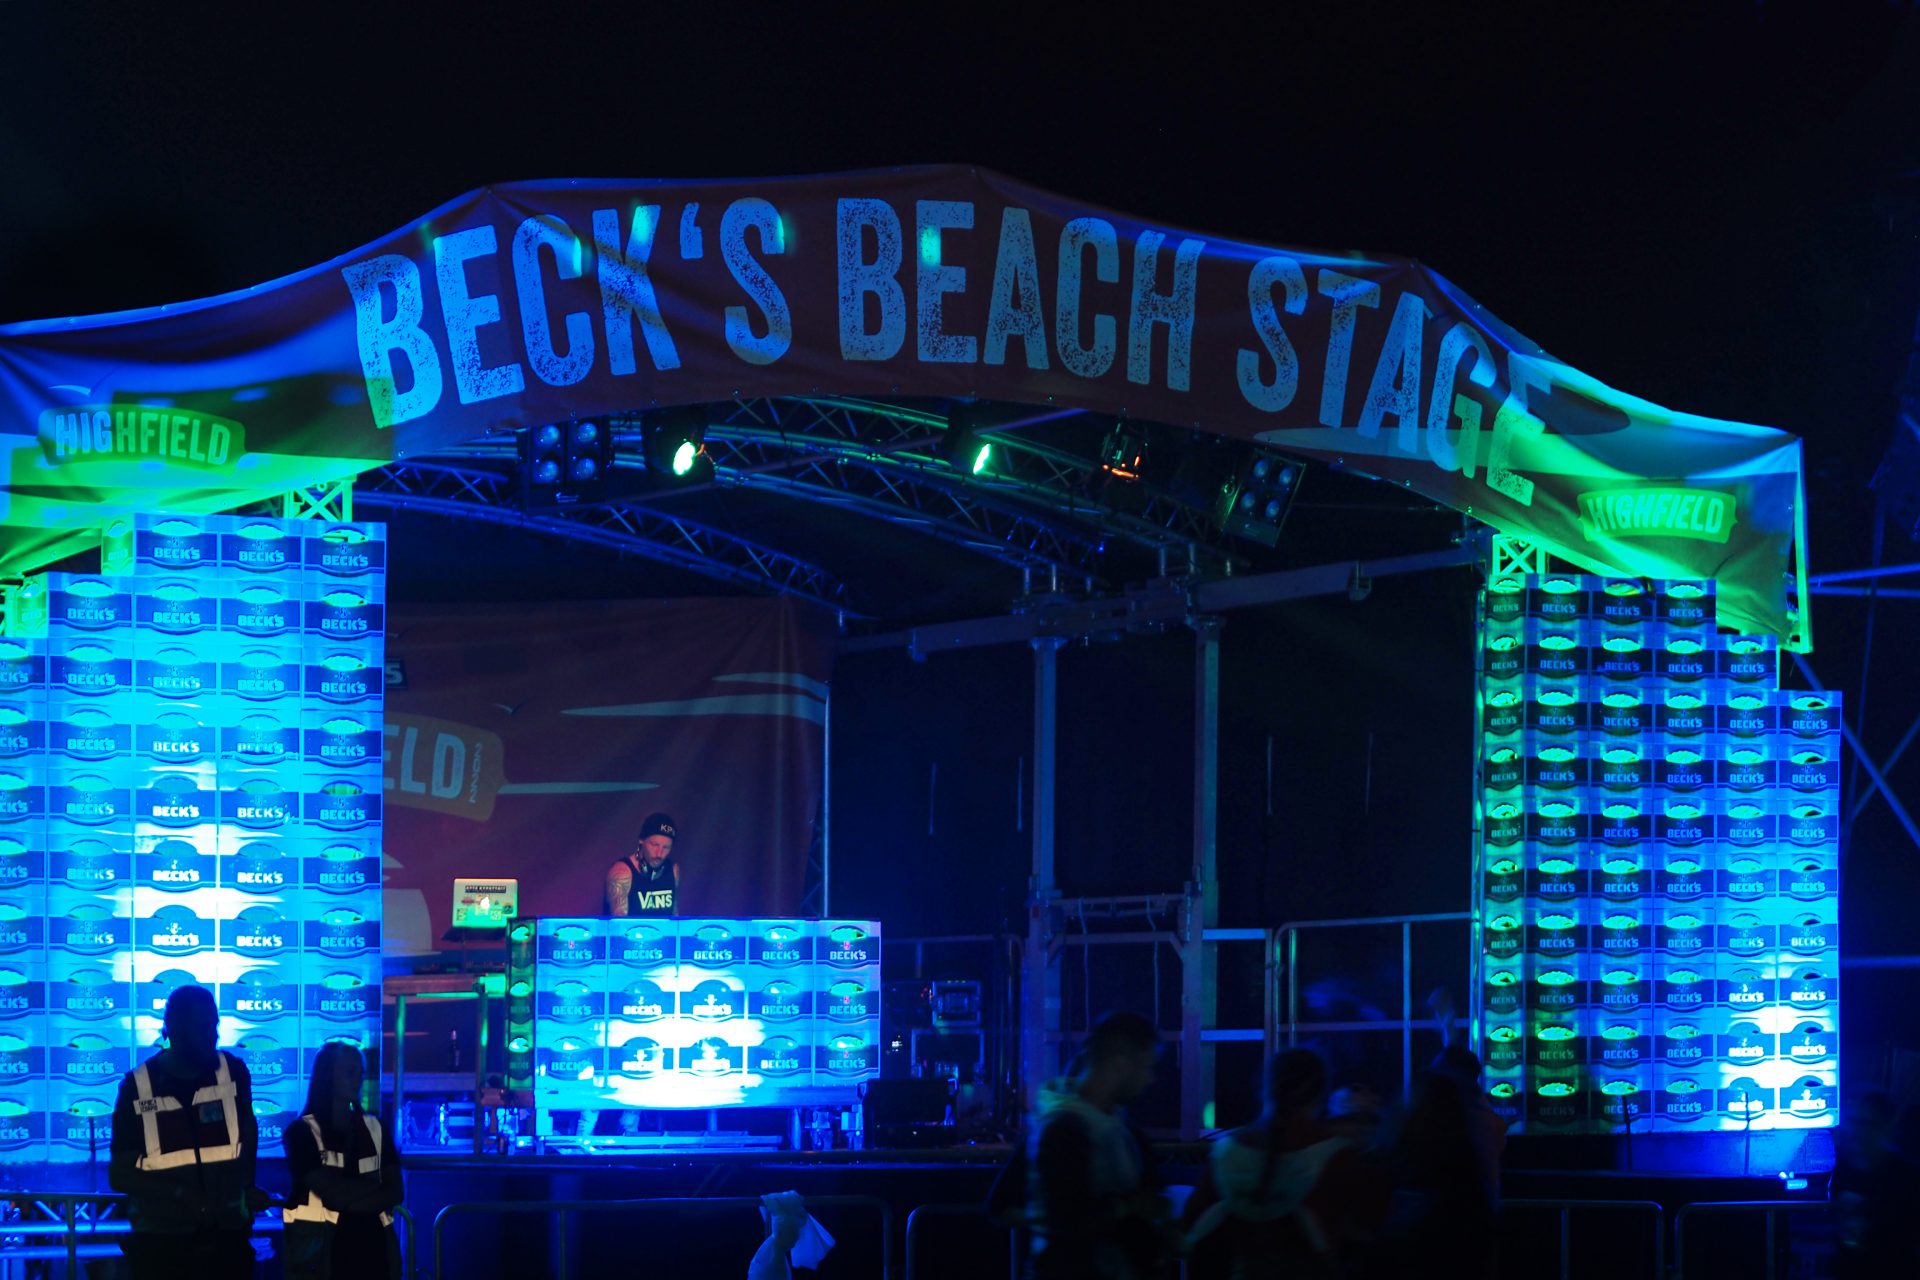 Die Becks Bühne bei Nacht beleuchtet